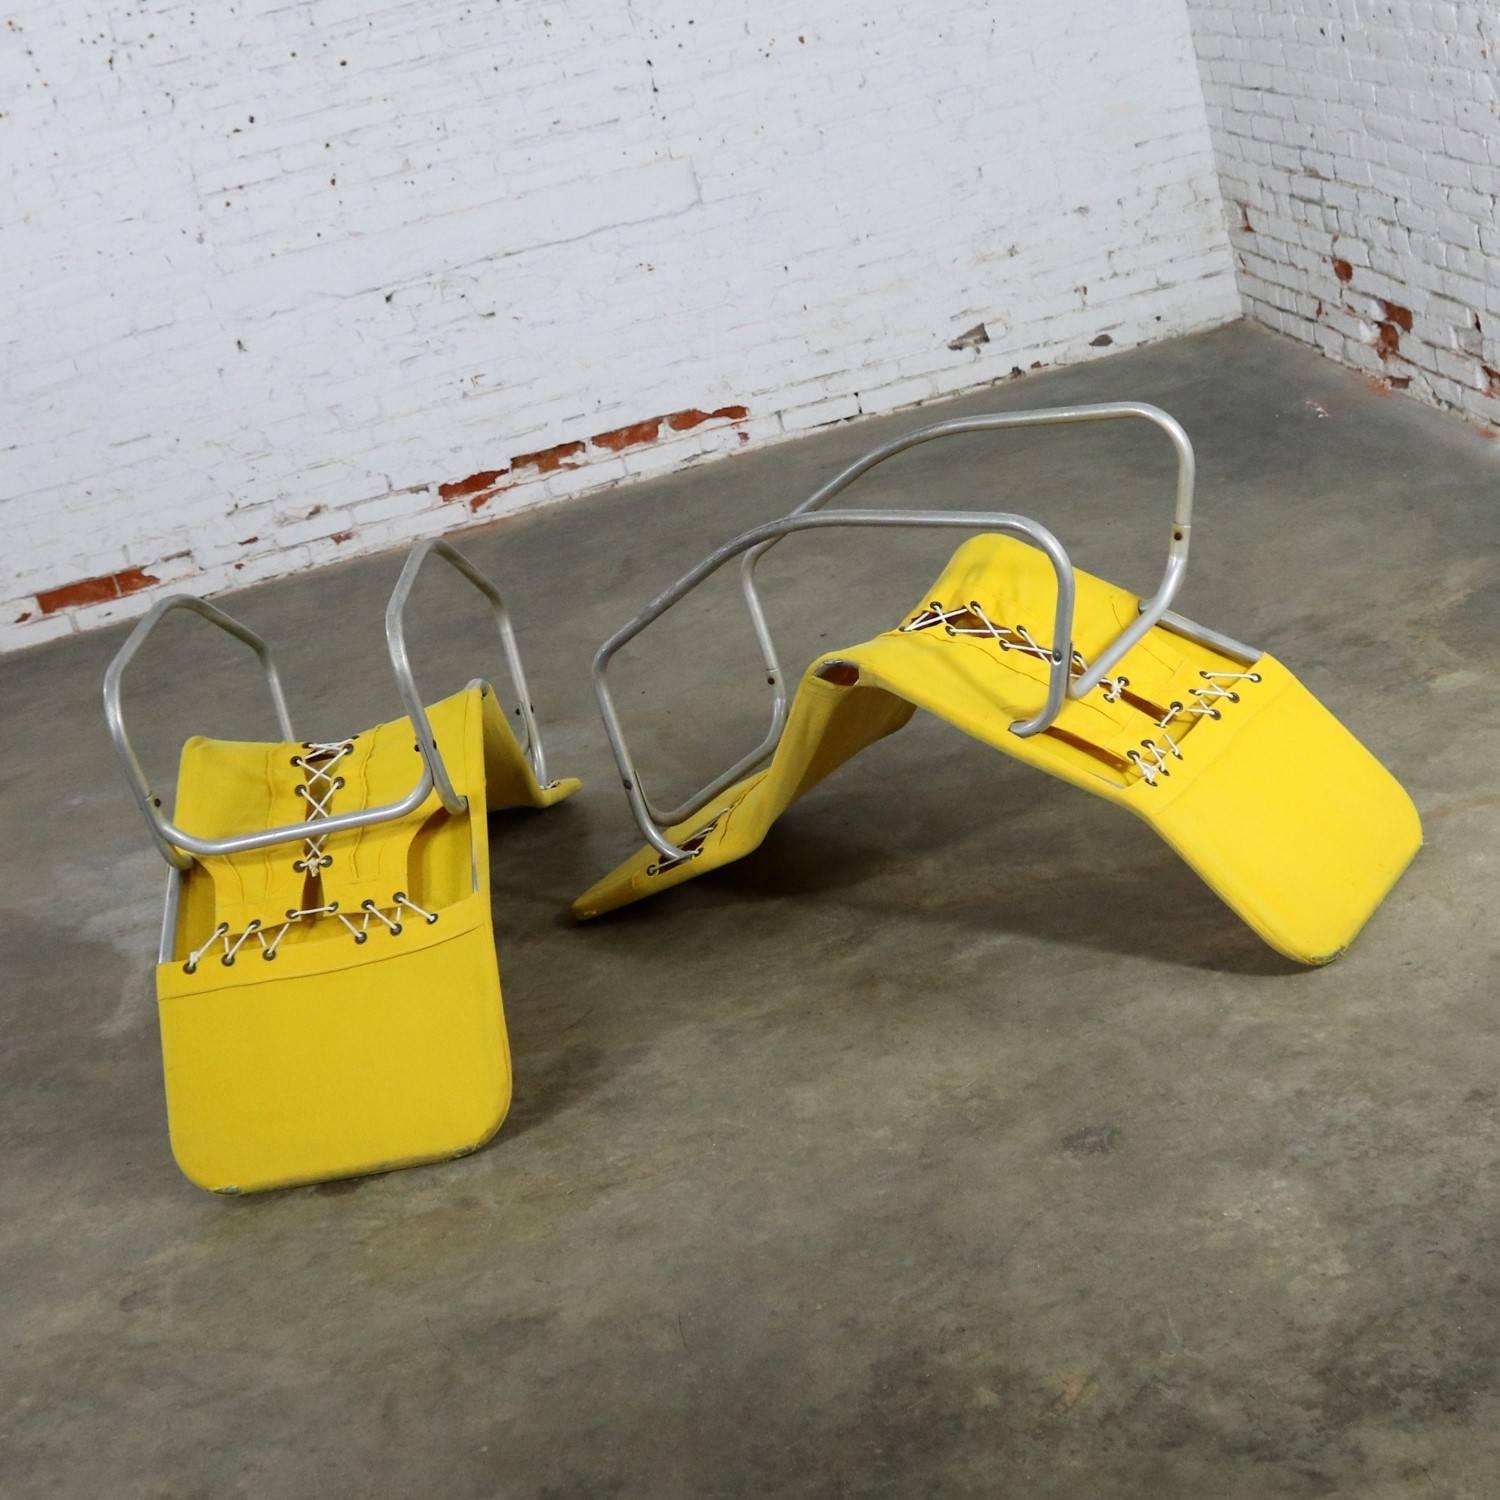 American Pair of Bartolucci-Waldheim Barwa Lounge Chairs Aluminium and Yellow Canvas